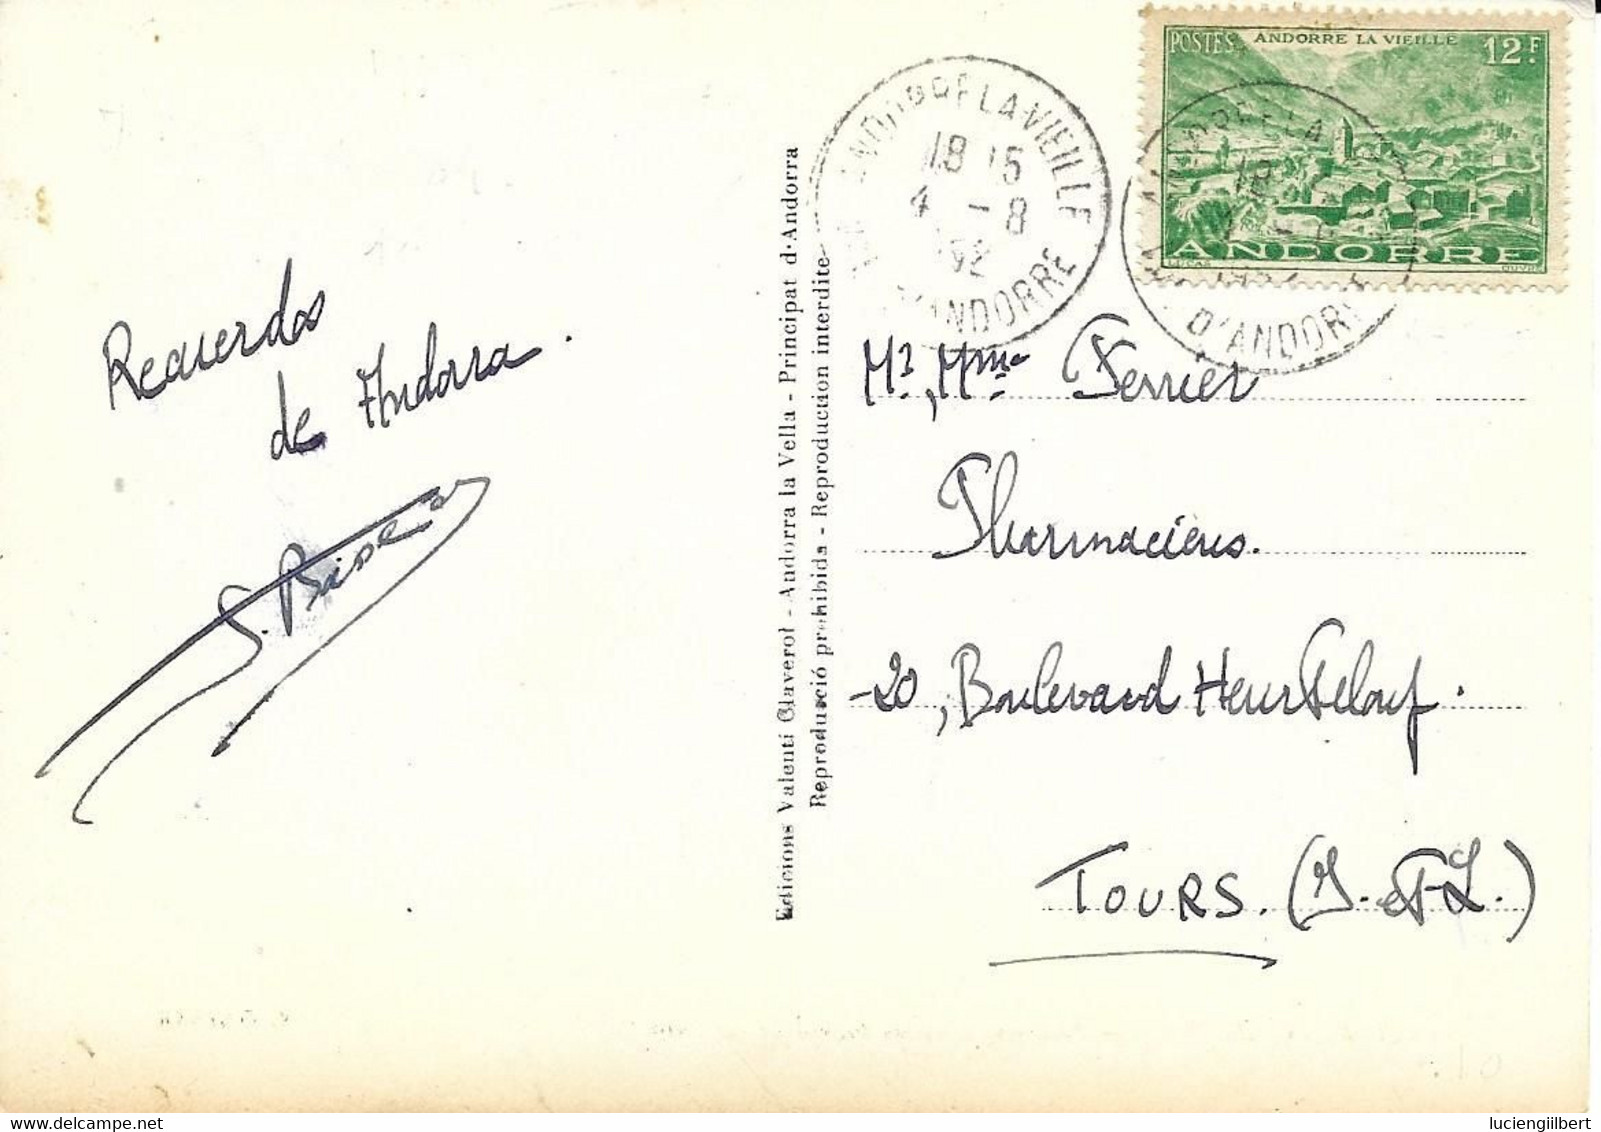 ANDORRE -    TIMBRES  N° 130 -  MAISON DES VALLEES  -  TARIF CP 6 01 49  -  1952 - CACHET MANUEL ANDORRE LA VIEILLE - Storia Postale